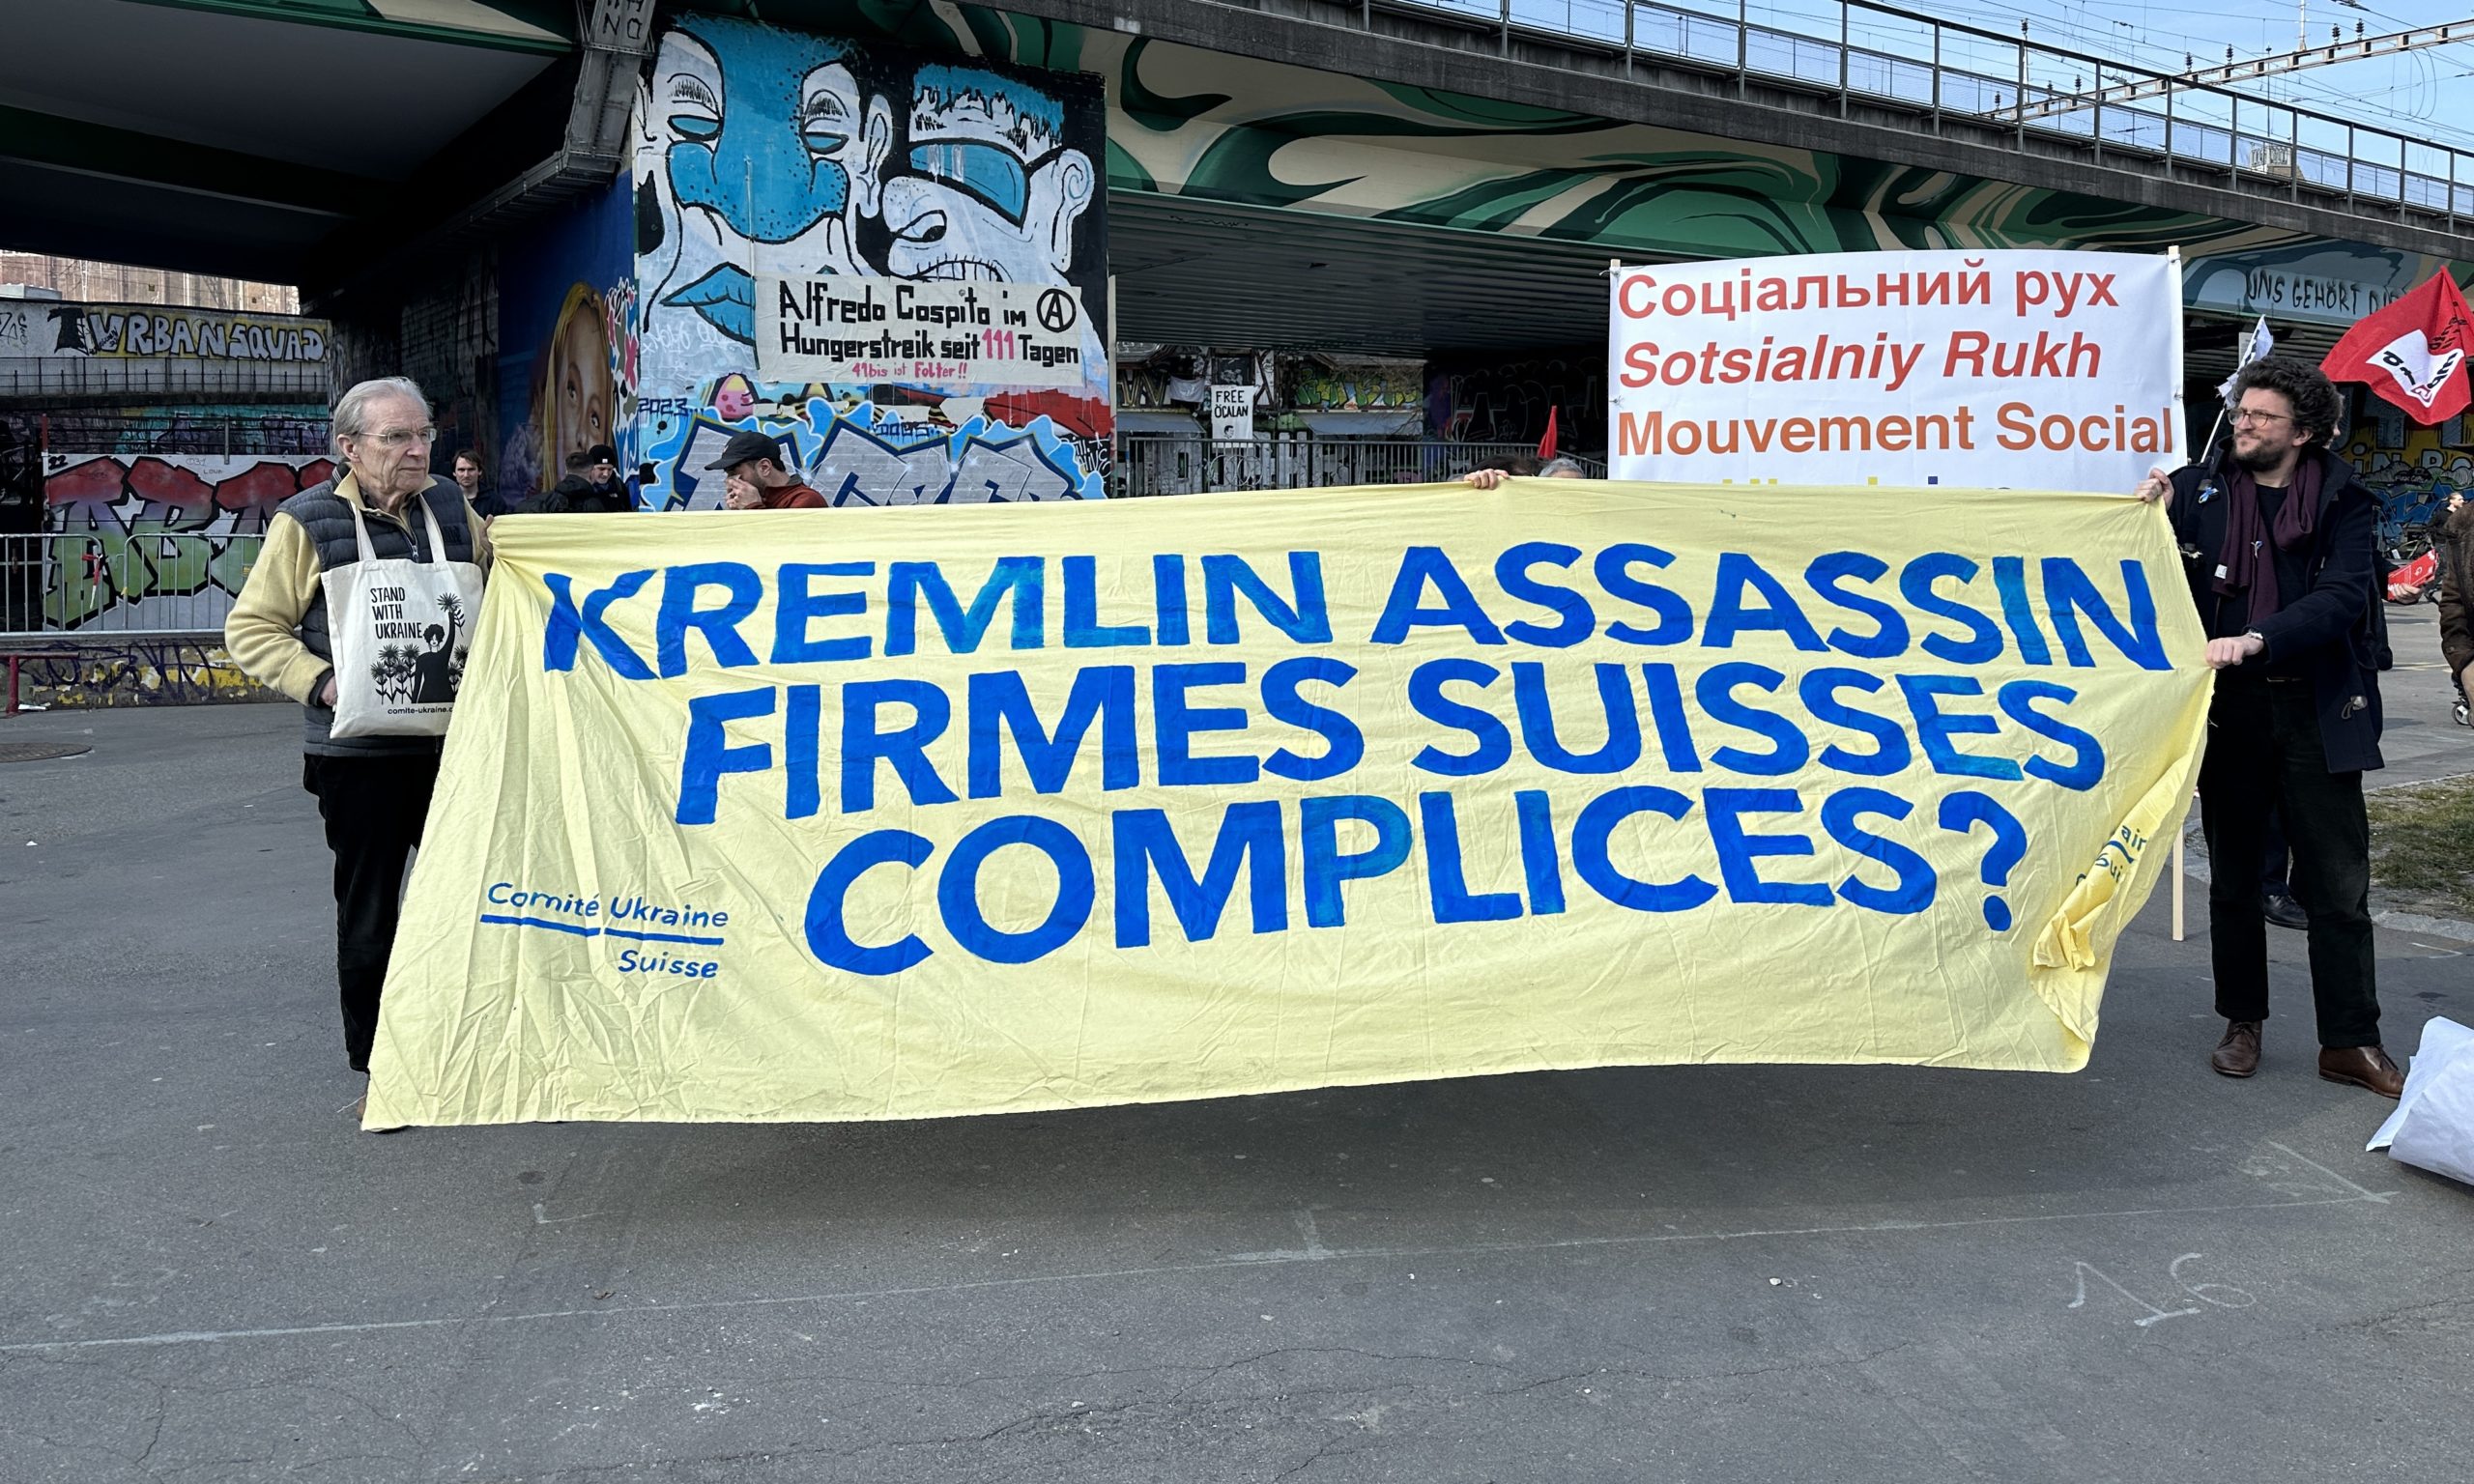 «Кремлевский убийца сотрудничает со швейцарскими фирмами?» Берн, 4 марта 2023 г. (© schwingen.net)